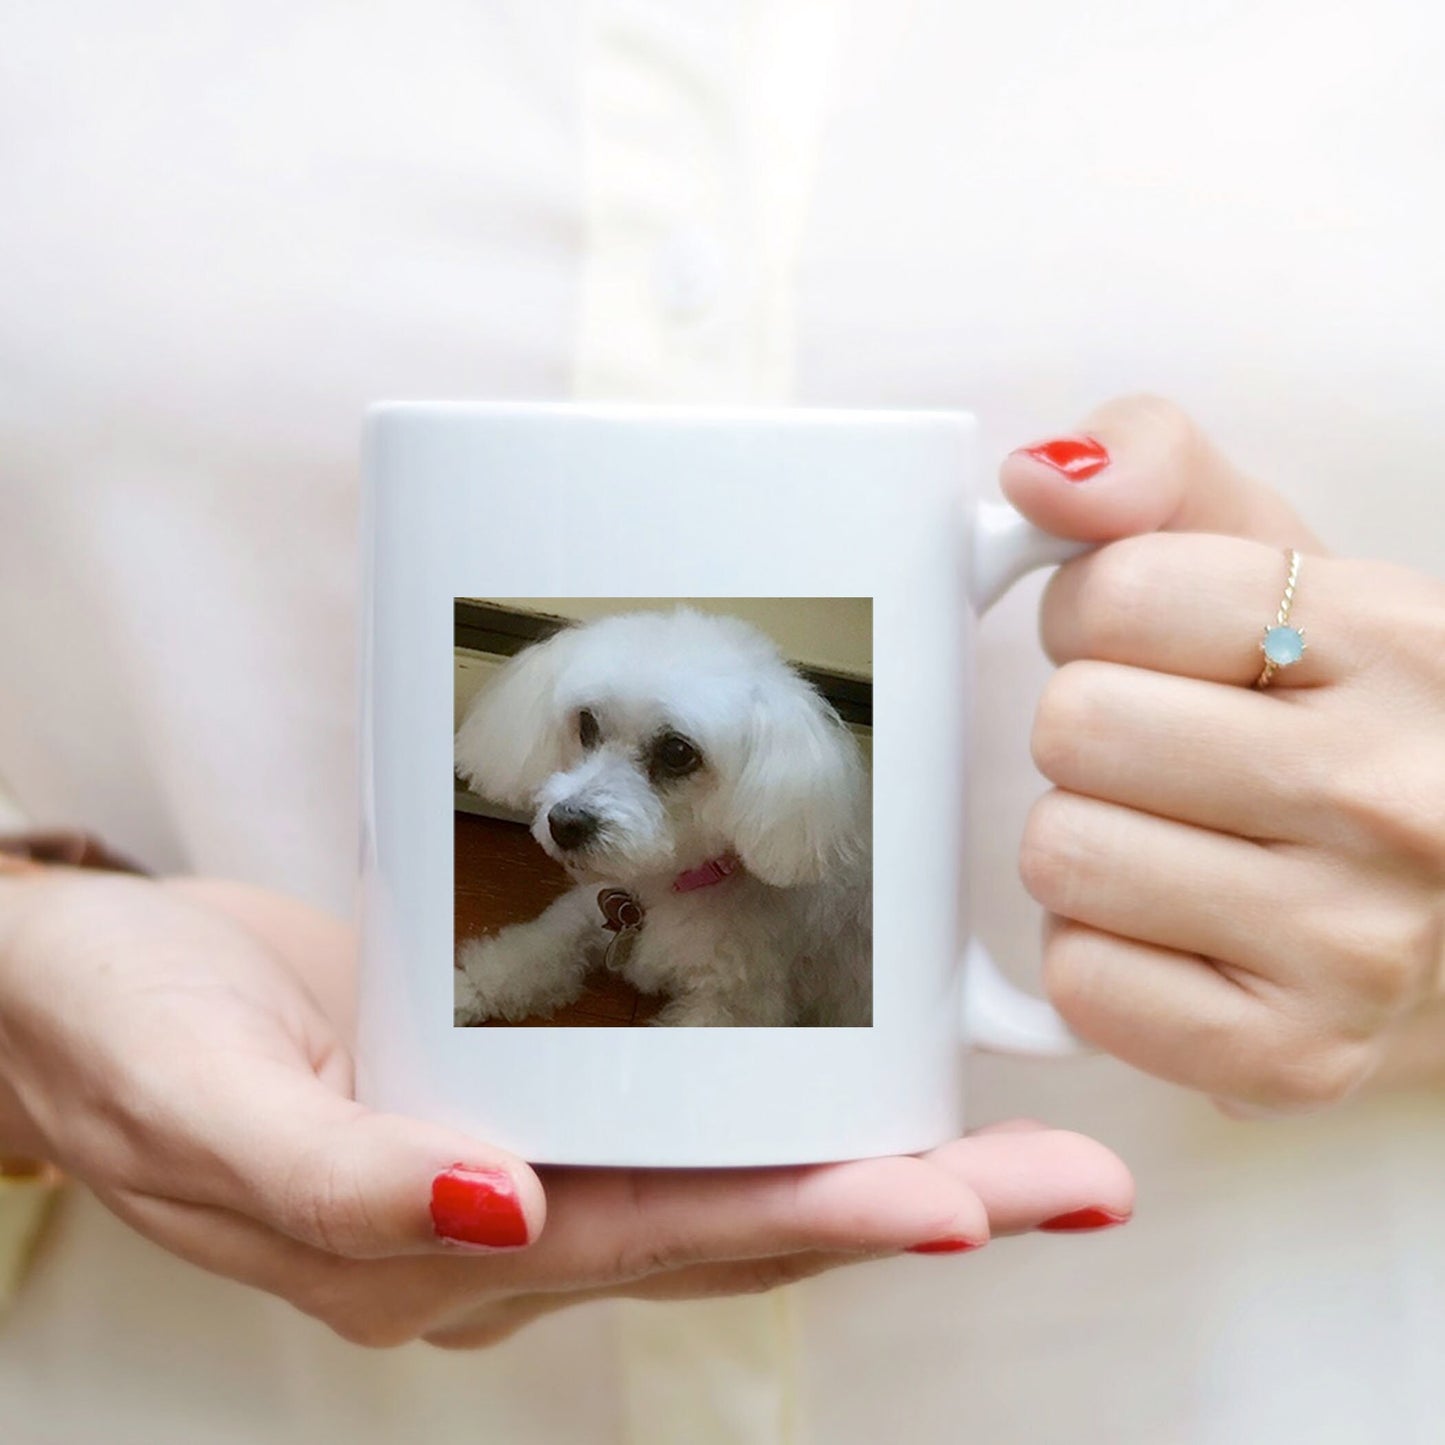 Pug Gifts for Dog Mom, Dog Lover Gift Coffee Mug - 11 oz.